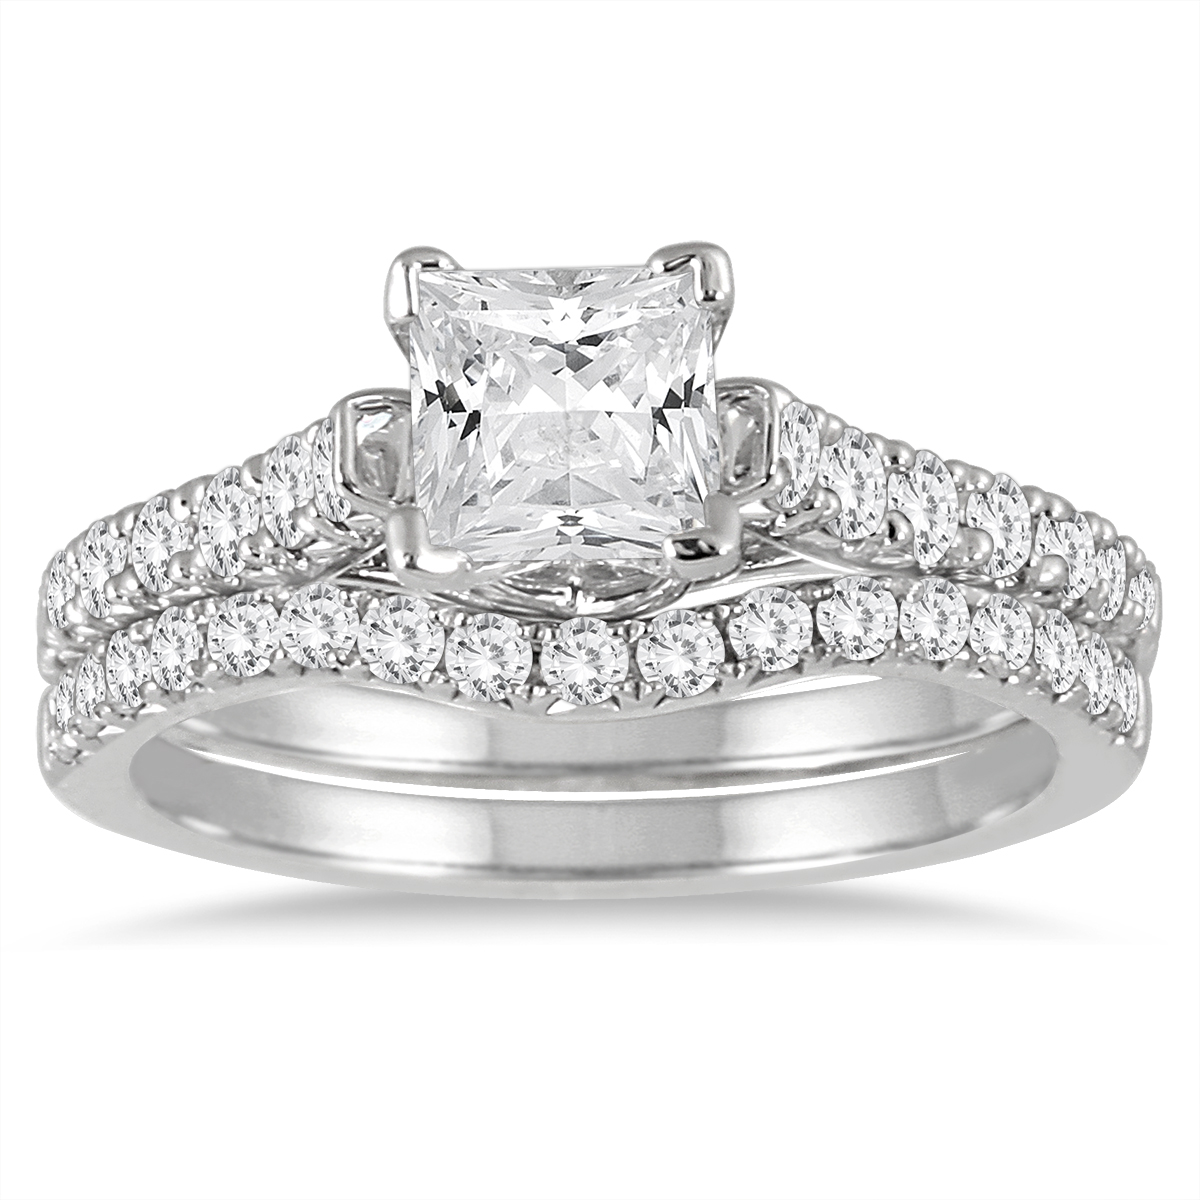 Image of 1 3/5 Carat TW Princess Diamond Bridal Set in 14K White Gold